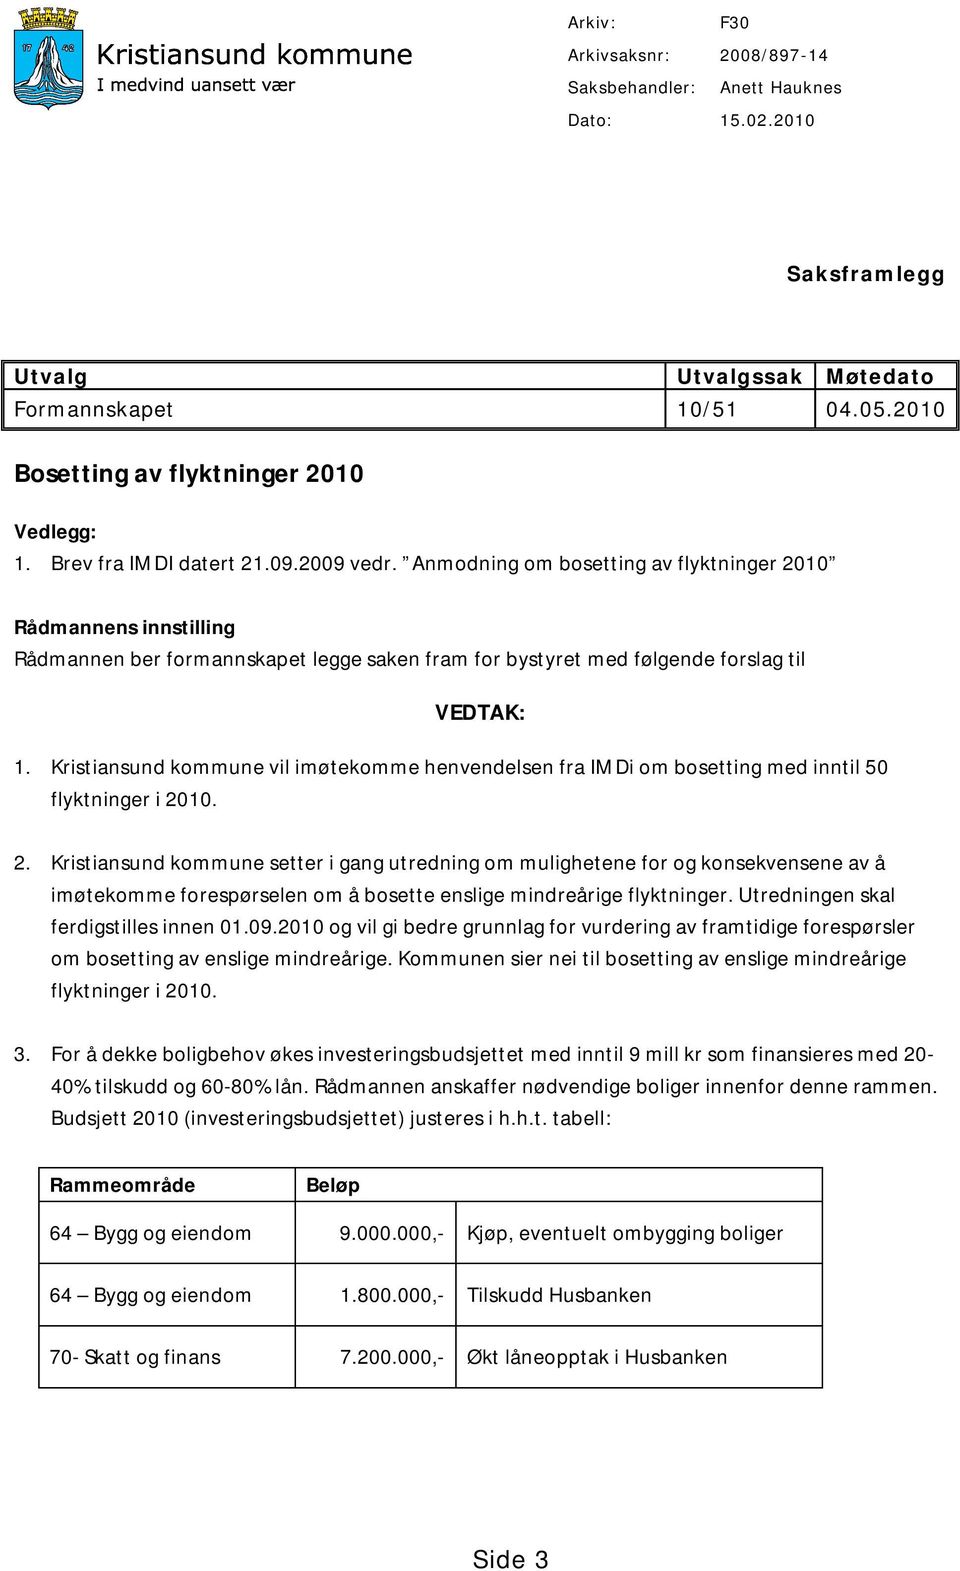 Kristiansund kommune vil imøtekomme henvendelsen fra IMDi om bosetting med inntil 50 flyktninger i 20